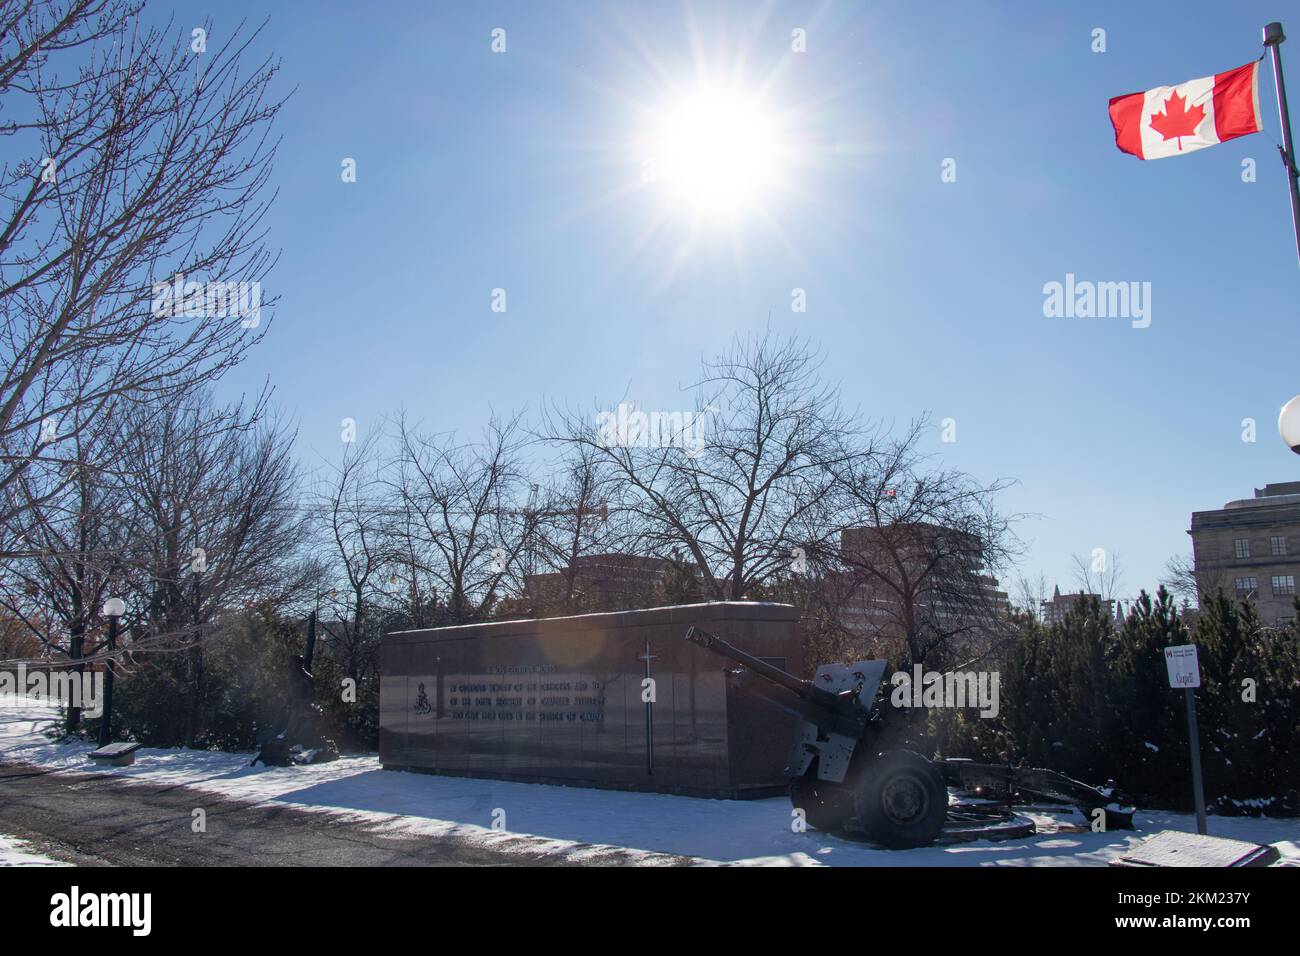 El Monumento Nacional de la Artillería, un monumento conmemorativo de la guerra que conmemora a los pistoleros canadienses muertos en servicio, es visto en un día soleado y nevado en Ottawa. Foto de stock